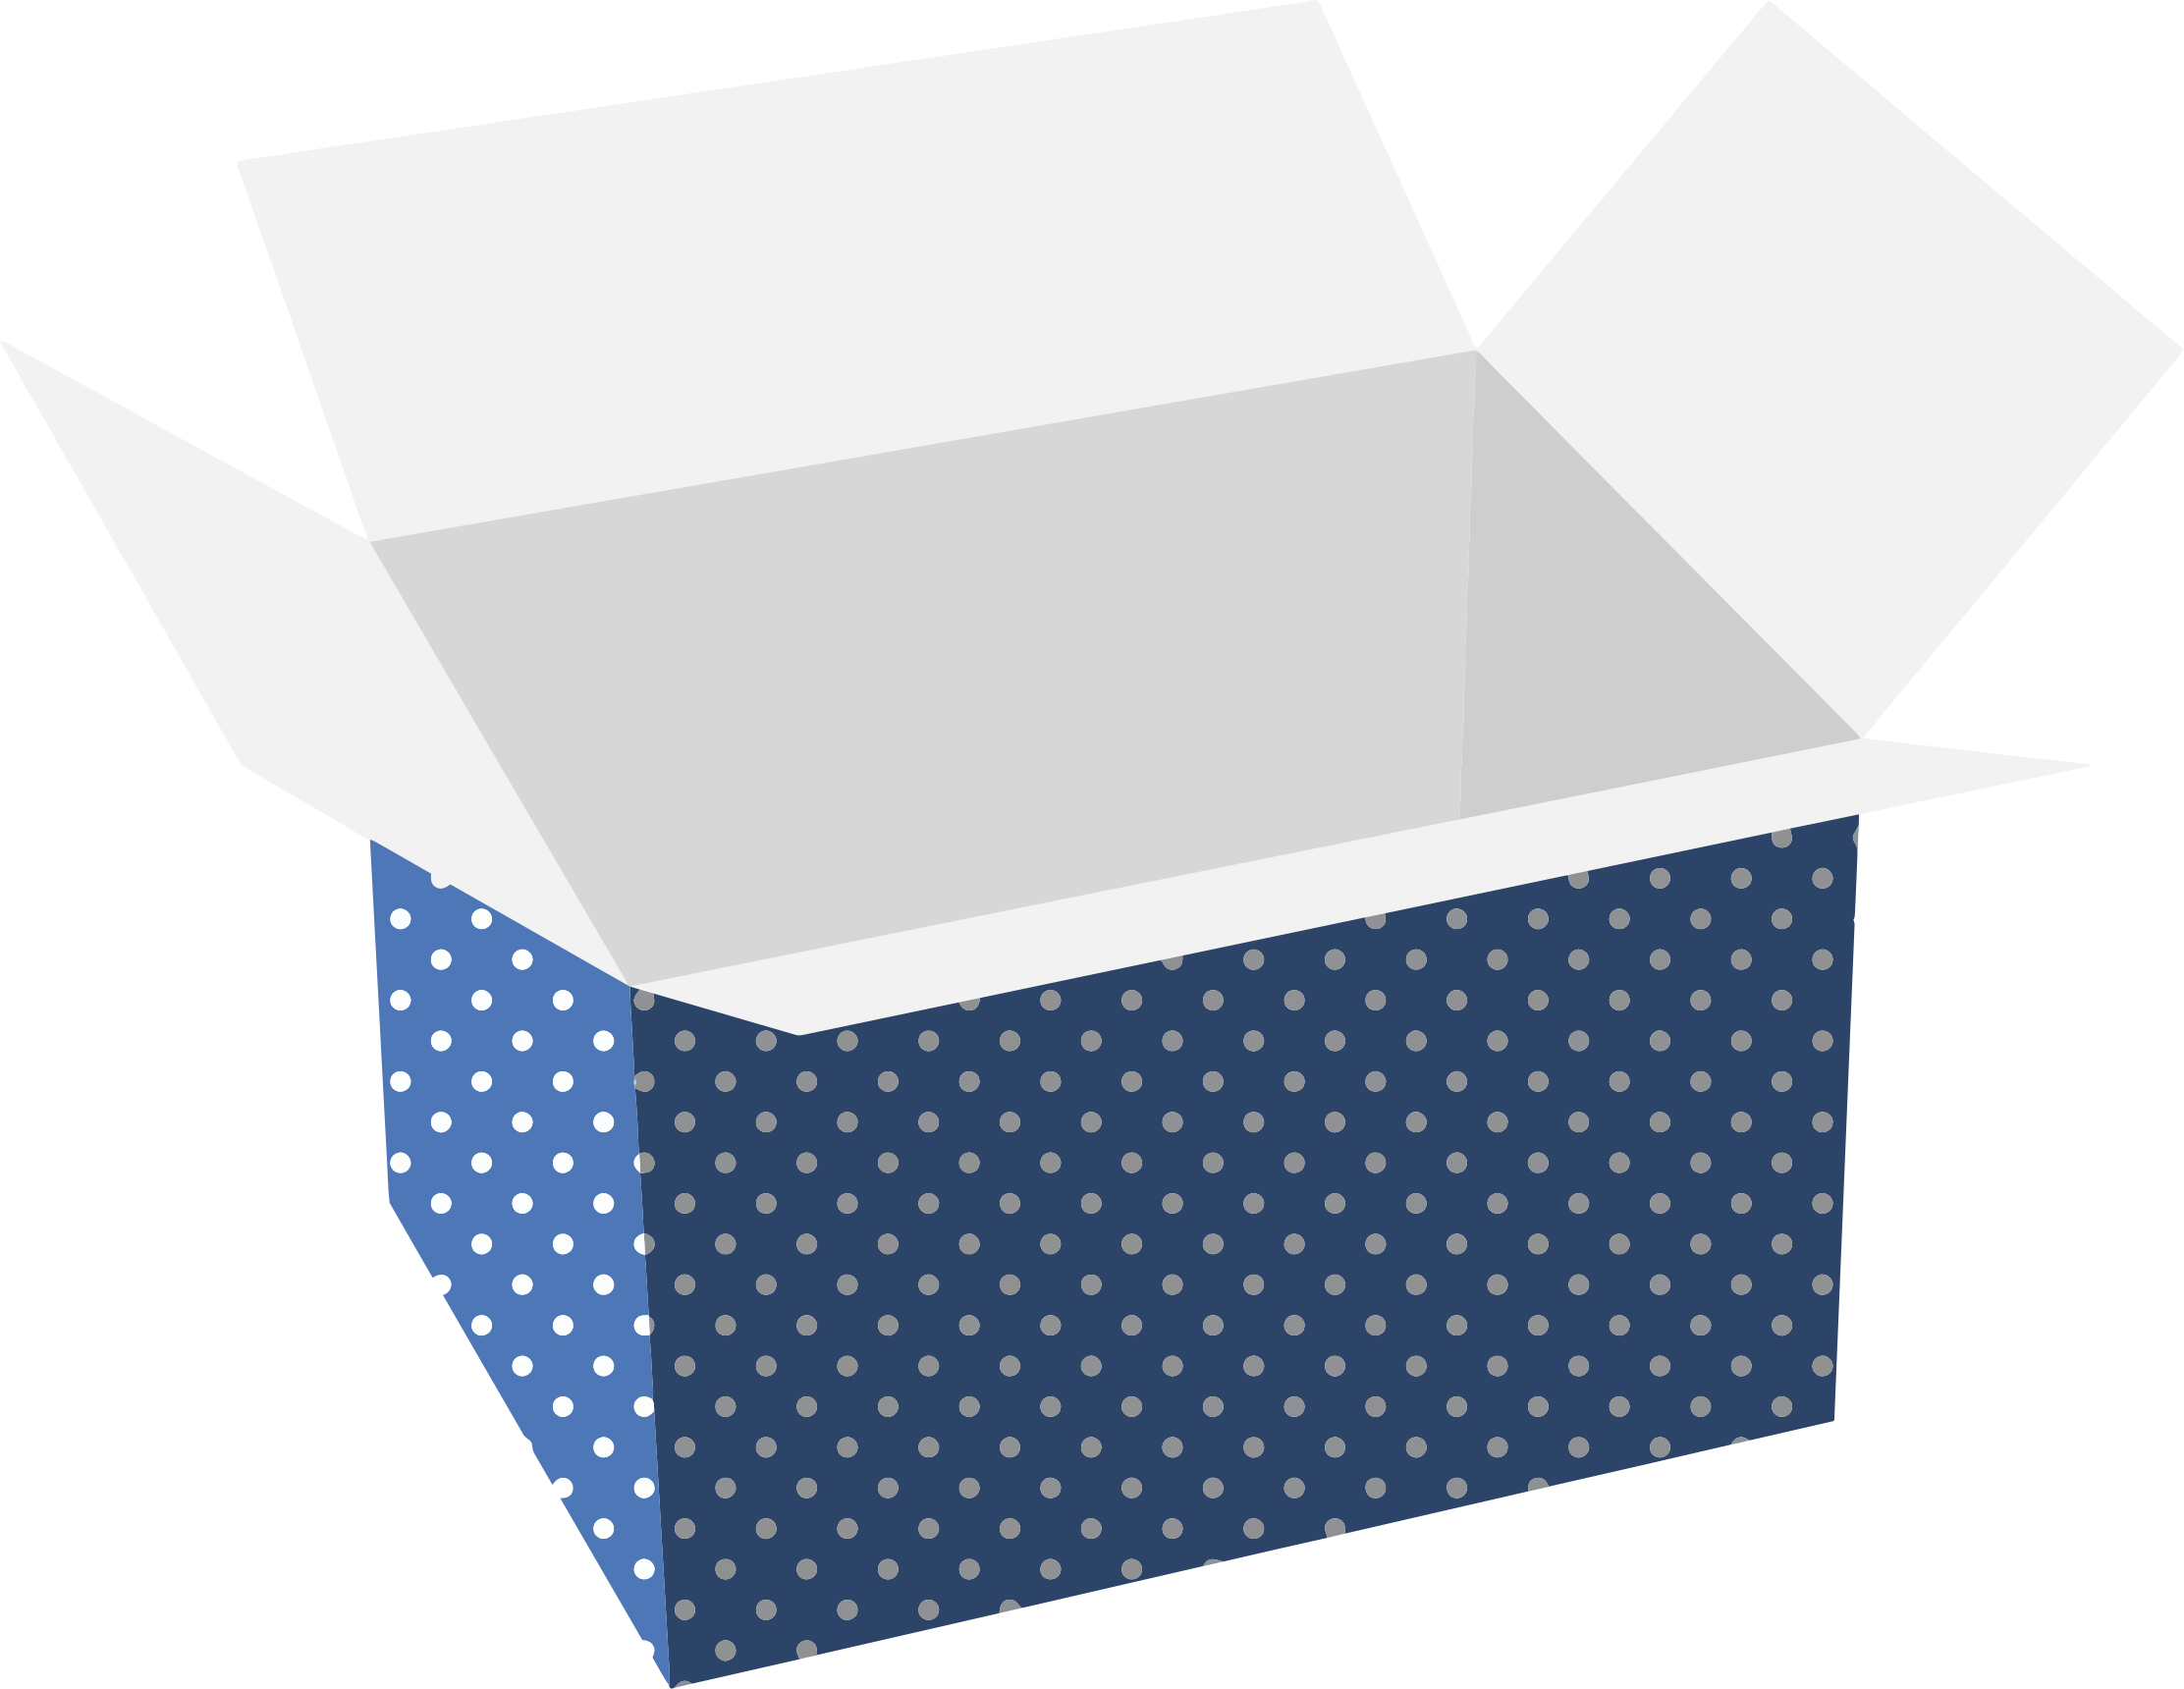 Polka Dot Cardboard Box - Polka Dot Cardboard Box (2224x1720)